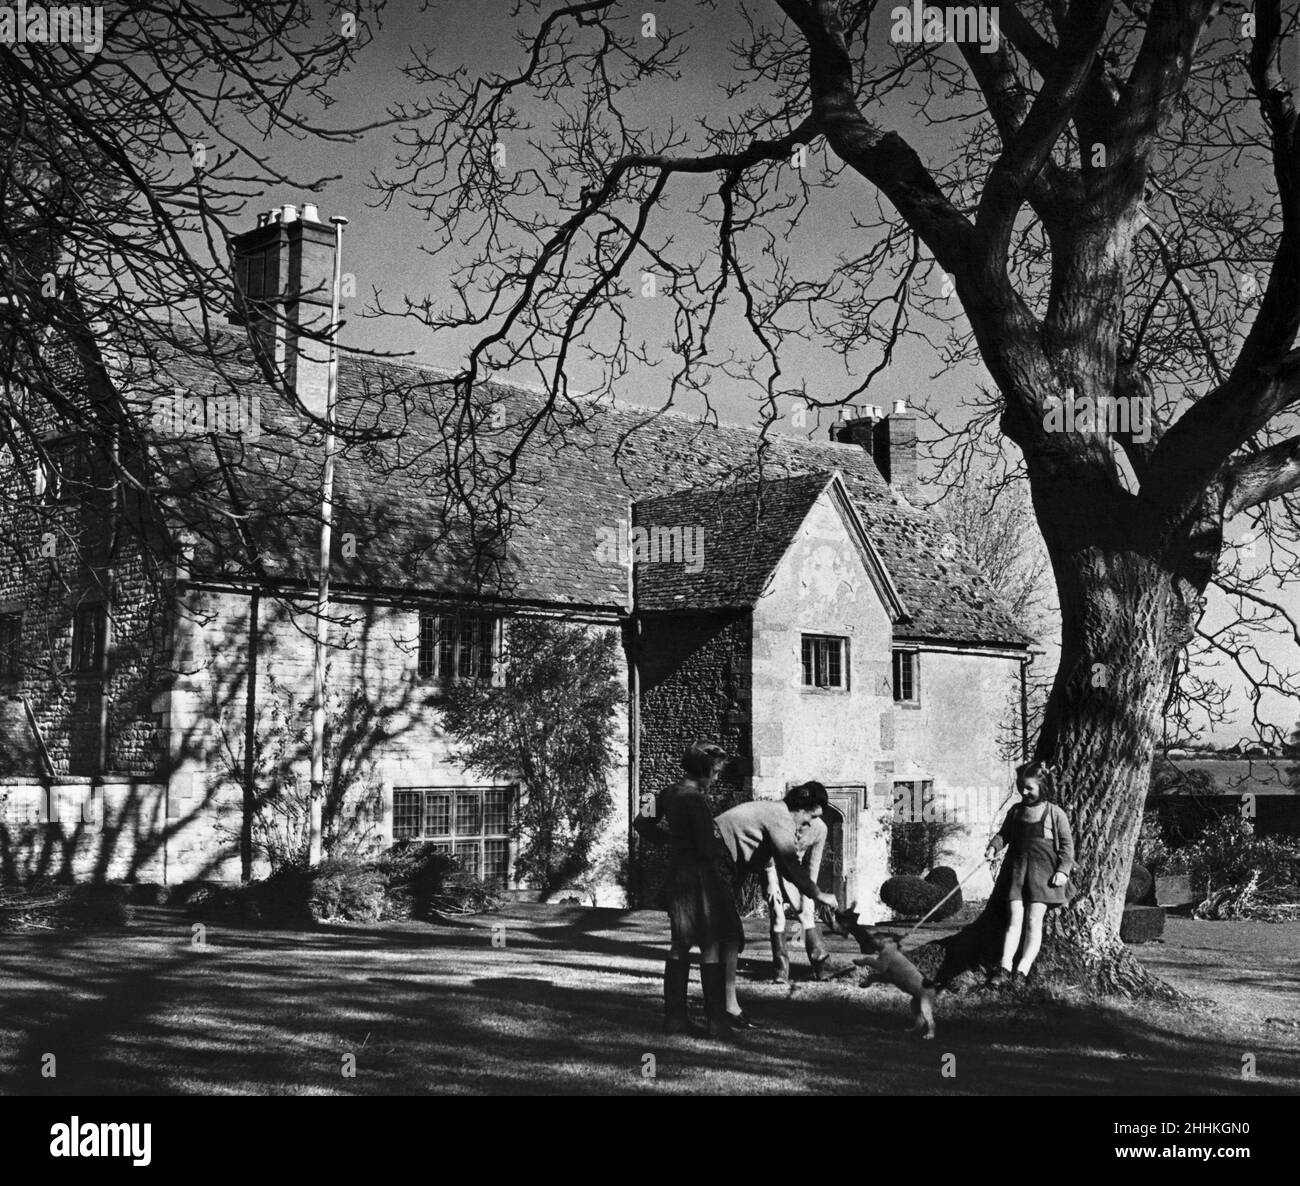 Sulgrave Northamptonshire: Un aspect attrayant de Sulgrave Manor, maison ancestrale allez le général George Washinton, restauré et pris dans le Sulgrave Manor Trust après la première guerre mondiale.Circa 1930 Banque D'Images